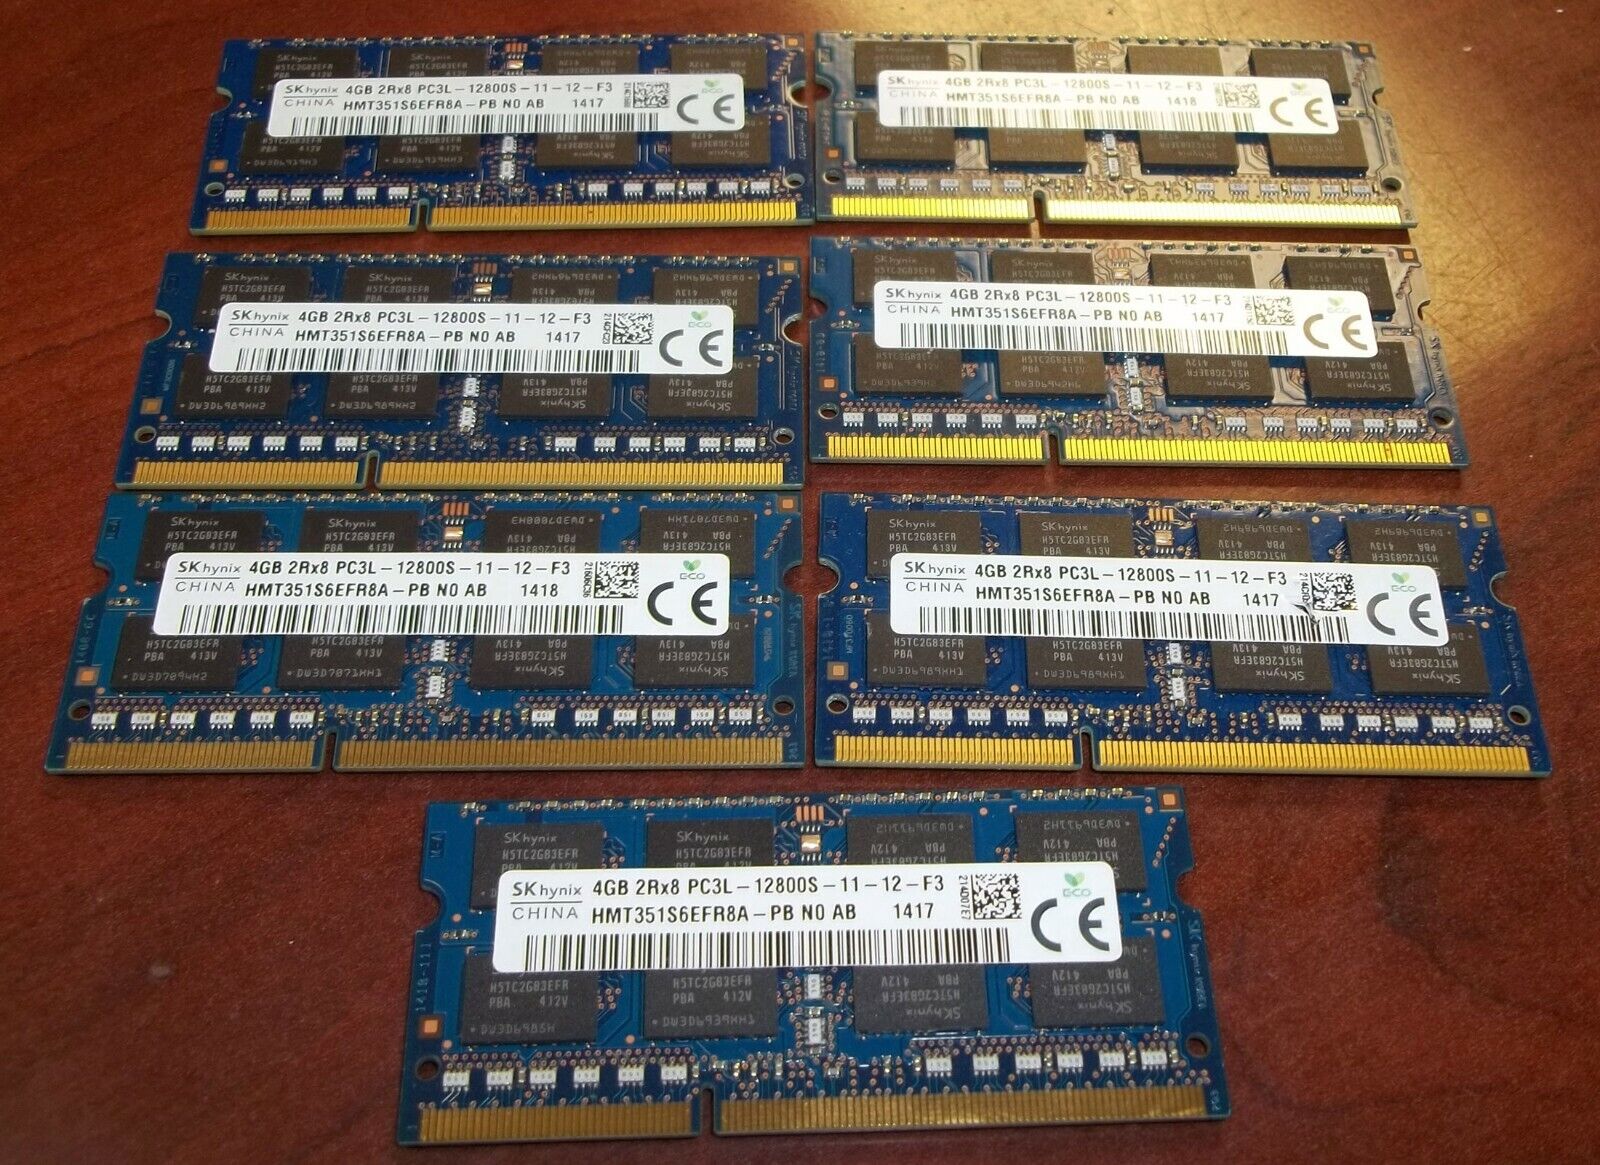 12 SKhynix 4GB Laptop RAM Memory Sticks 2Rx8 PC3L-12800S Free Ship P